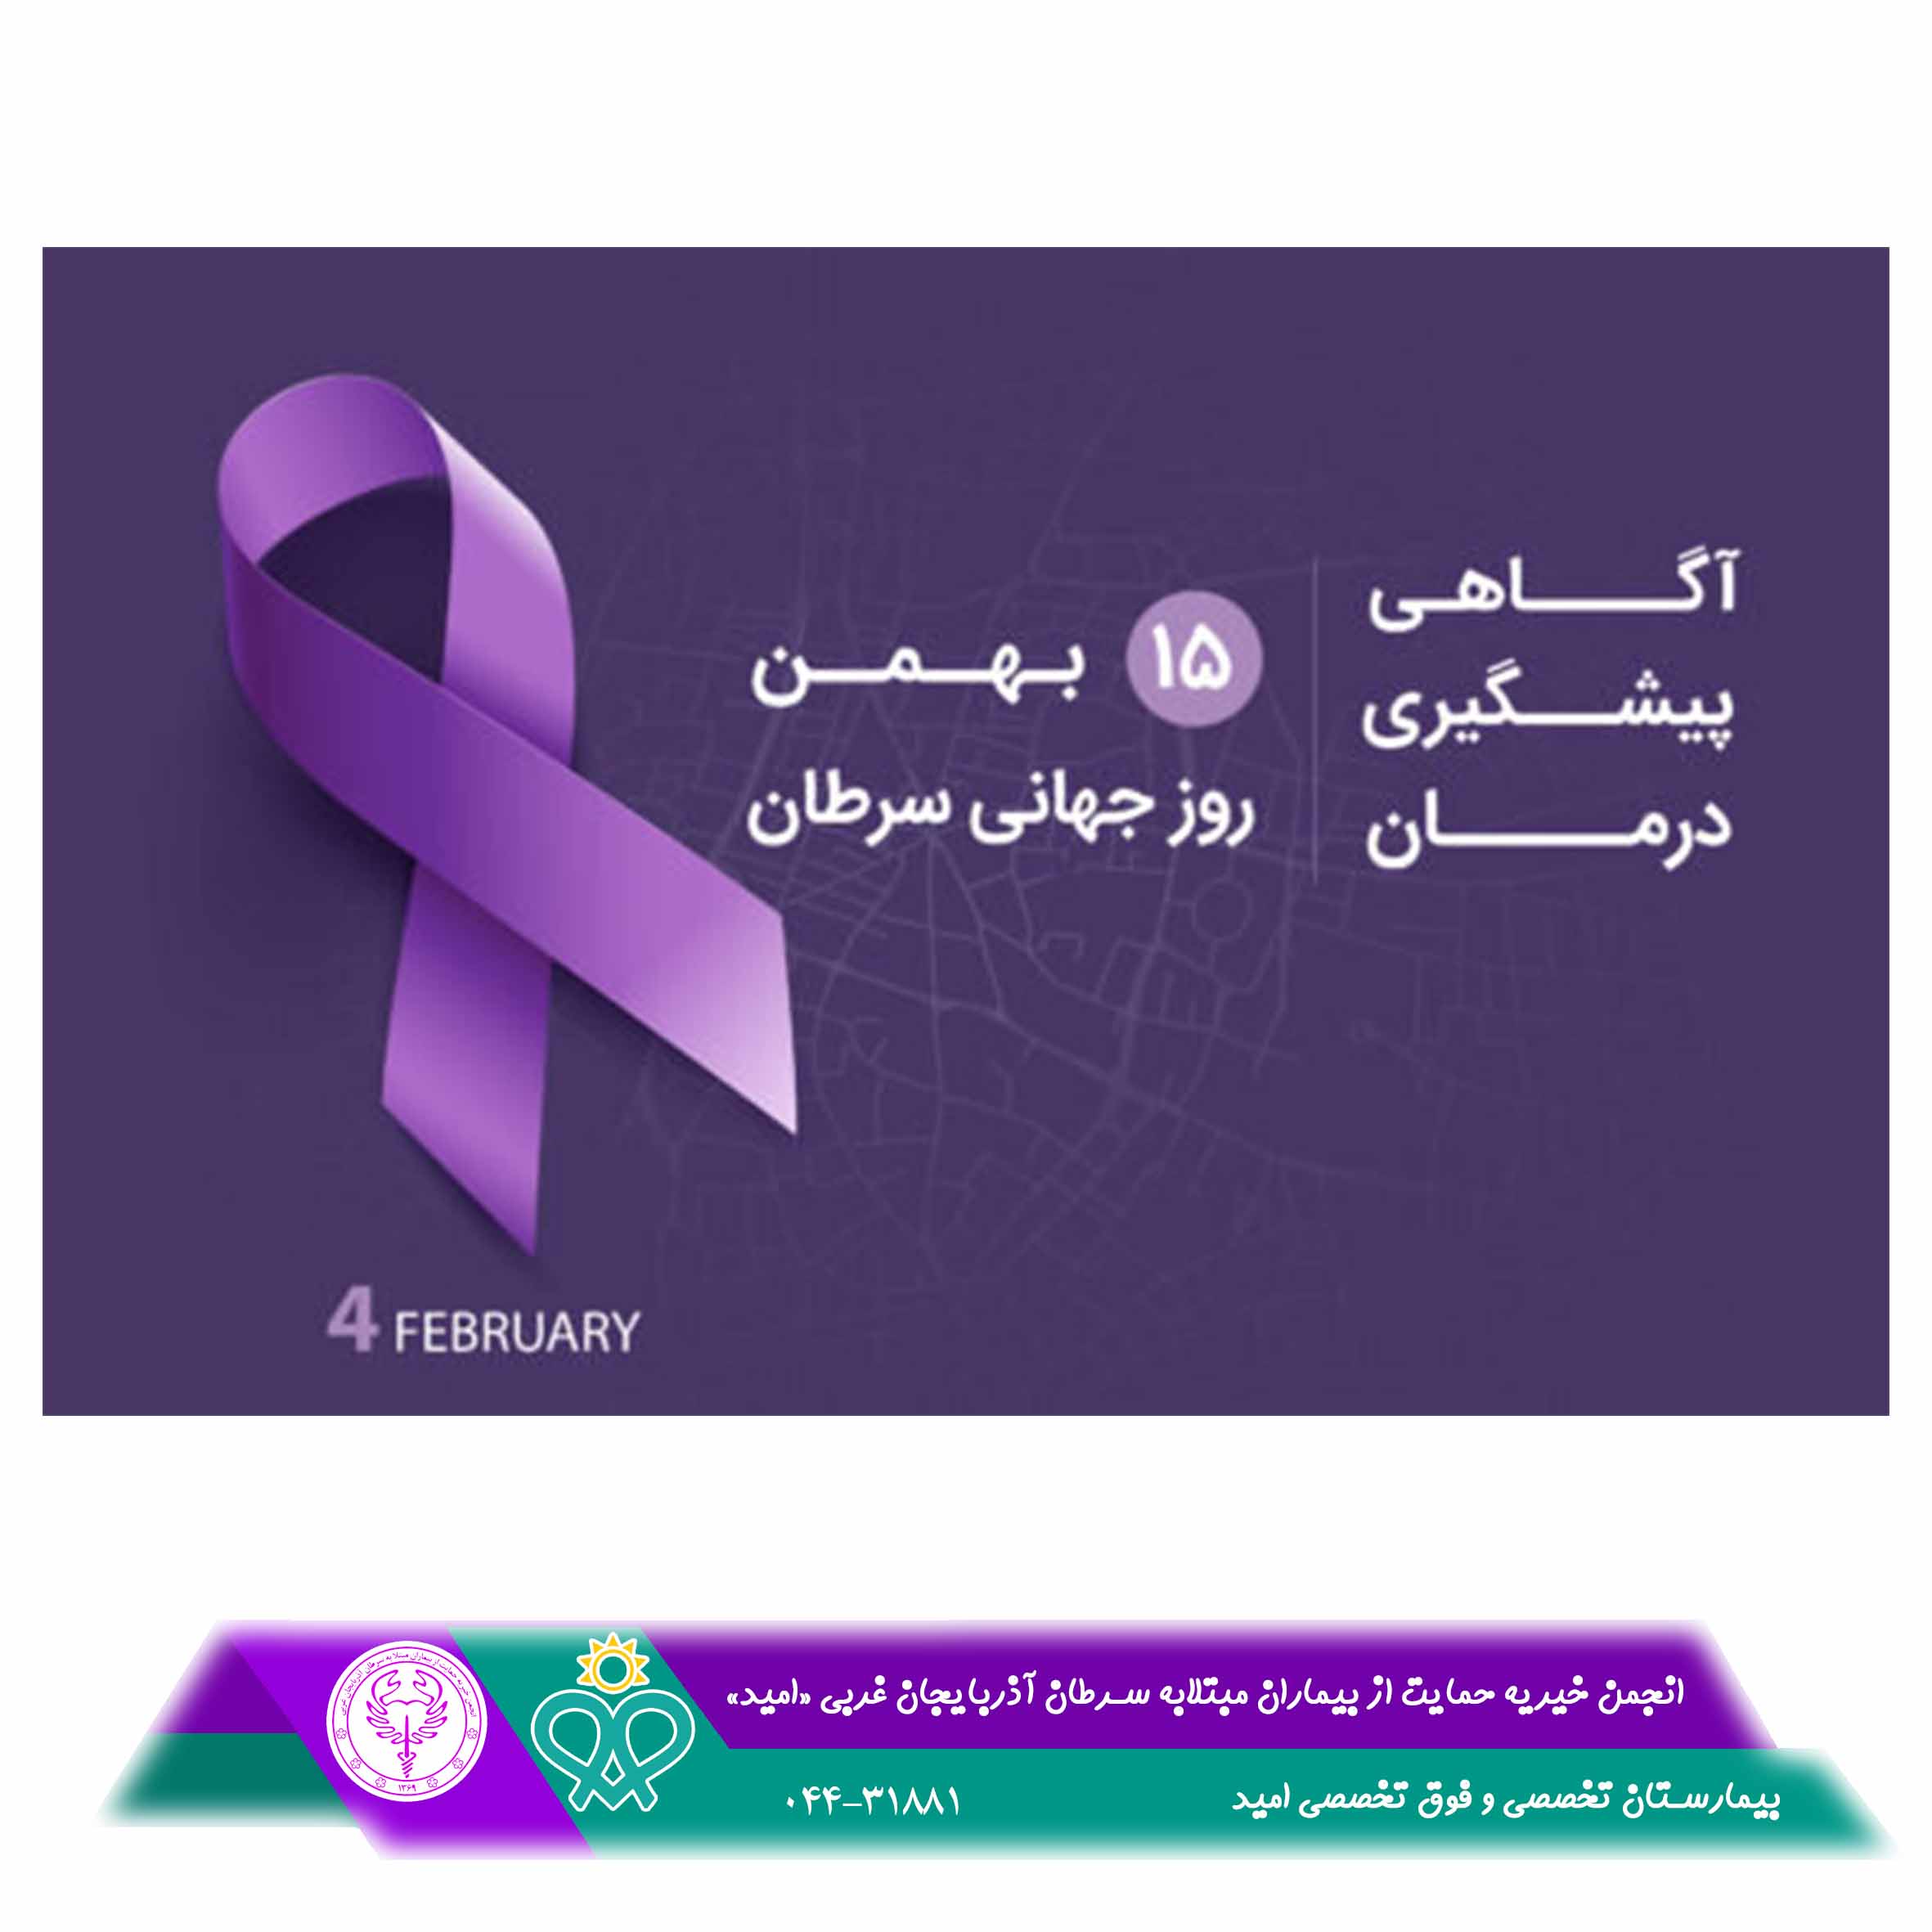 15 بهمن روز جهاني مبارزه با سرطان ...